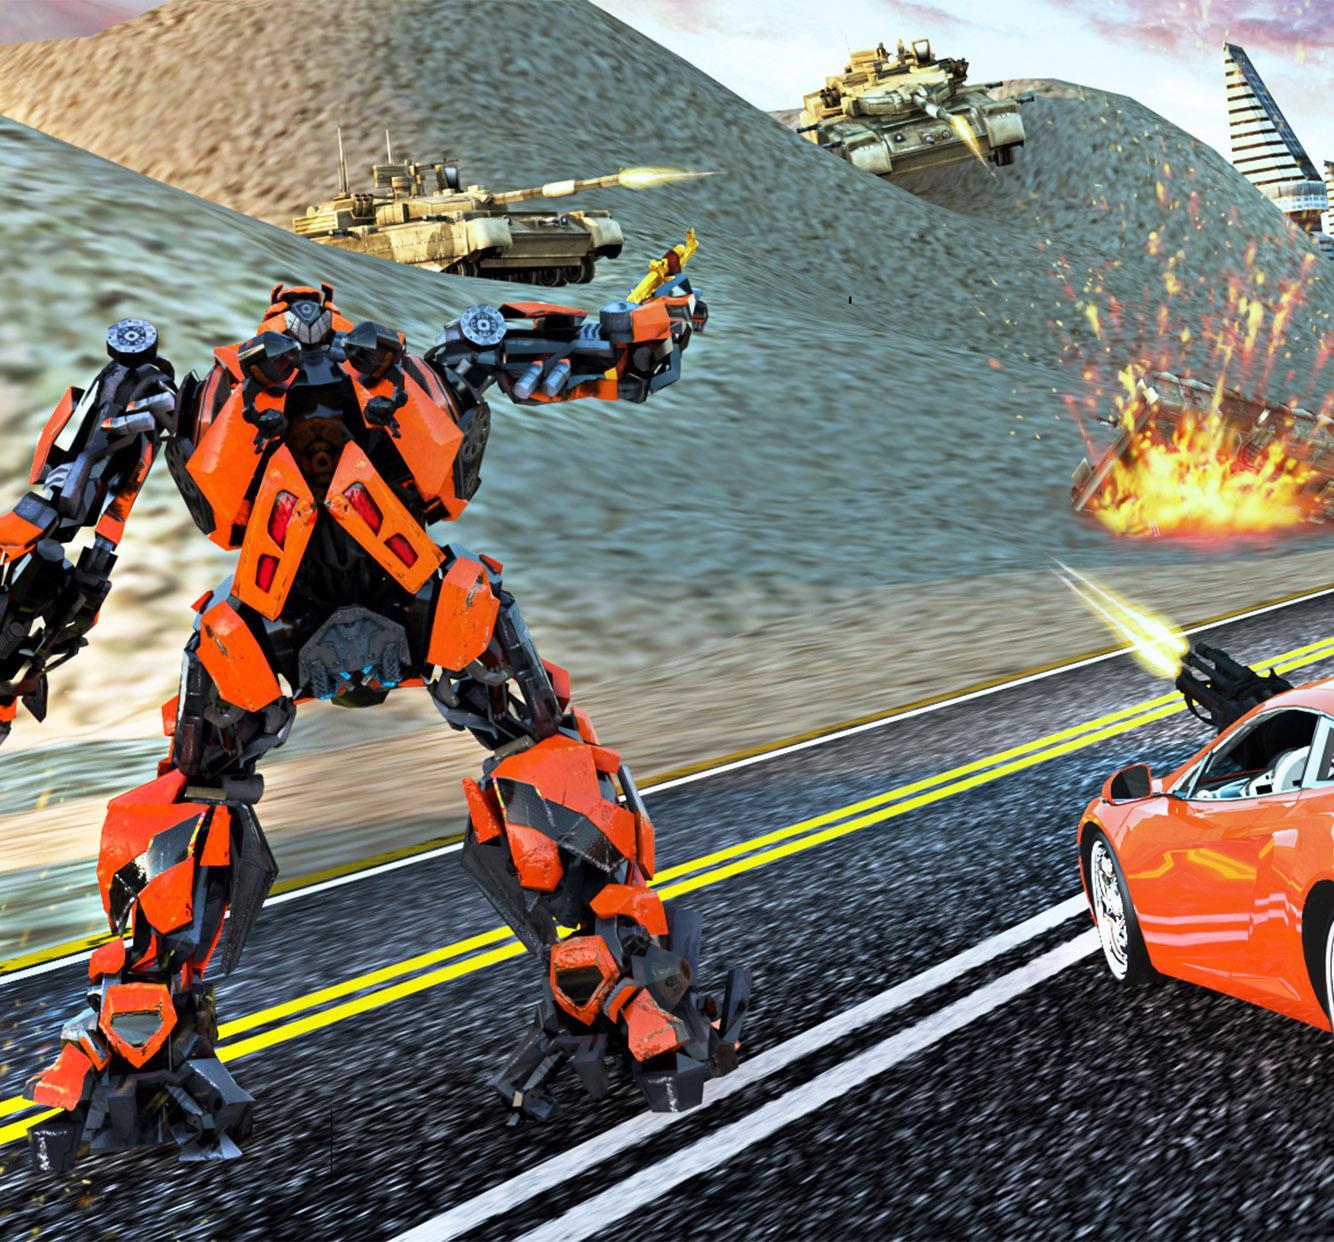 Transformers vs. Grand робот кар трансформер. Трансформеры против роботов. Войны роботов 1993. Тоботы против трансформеров.